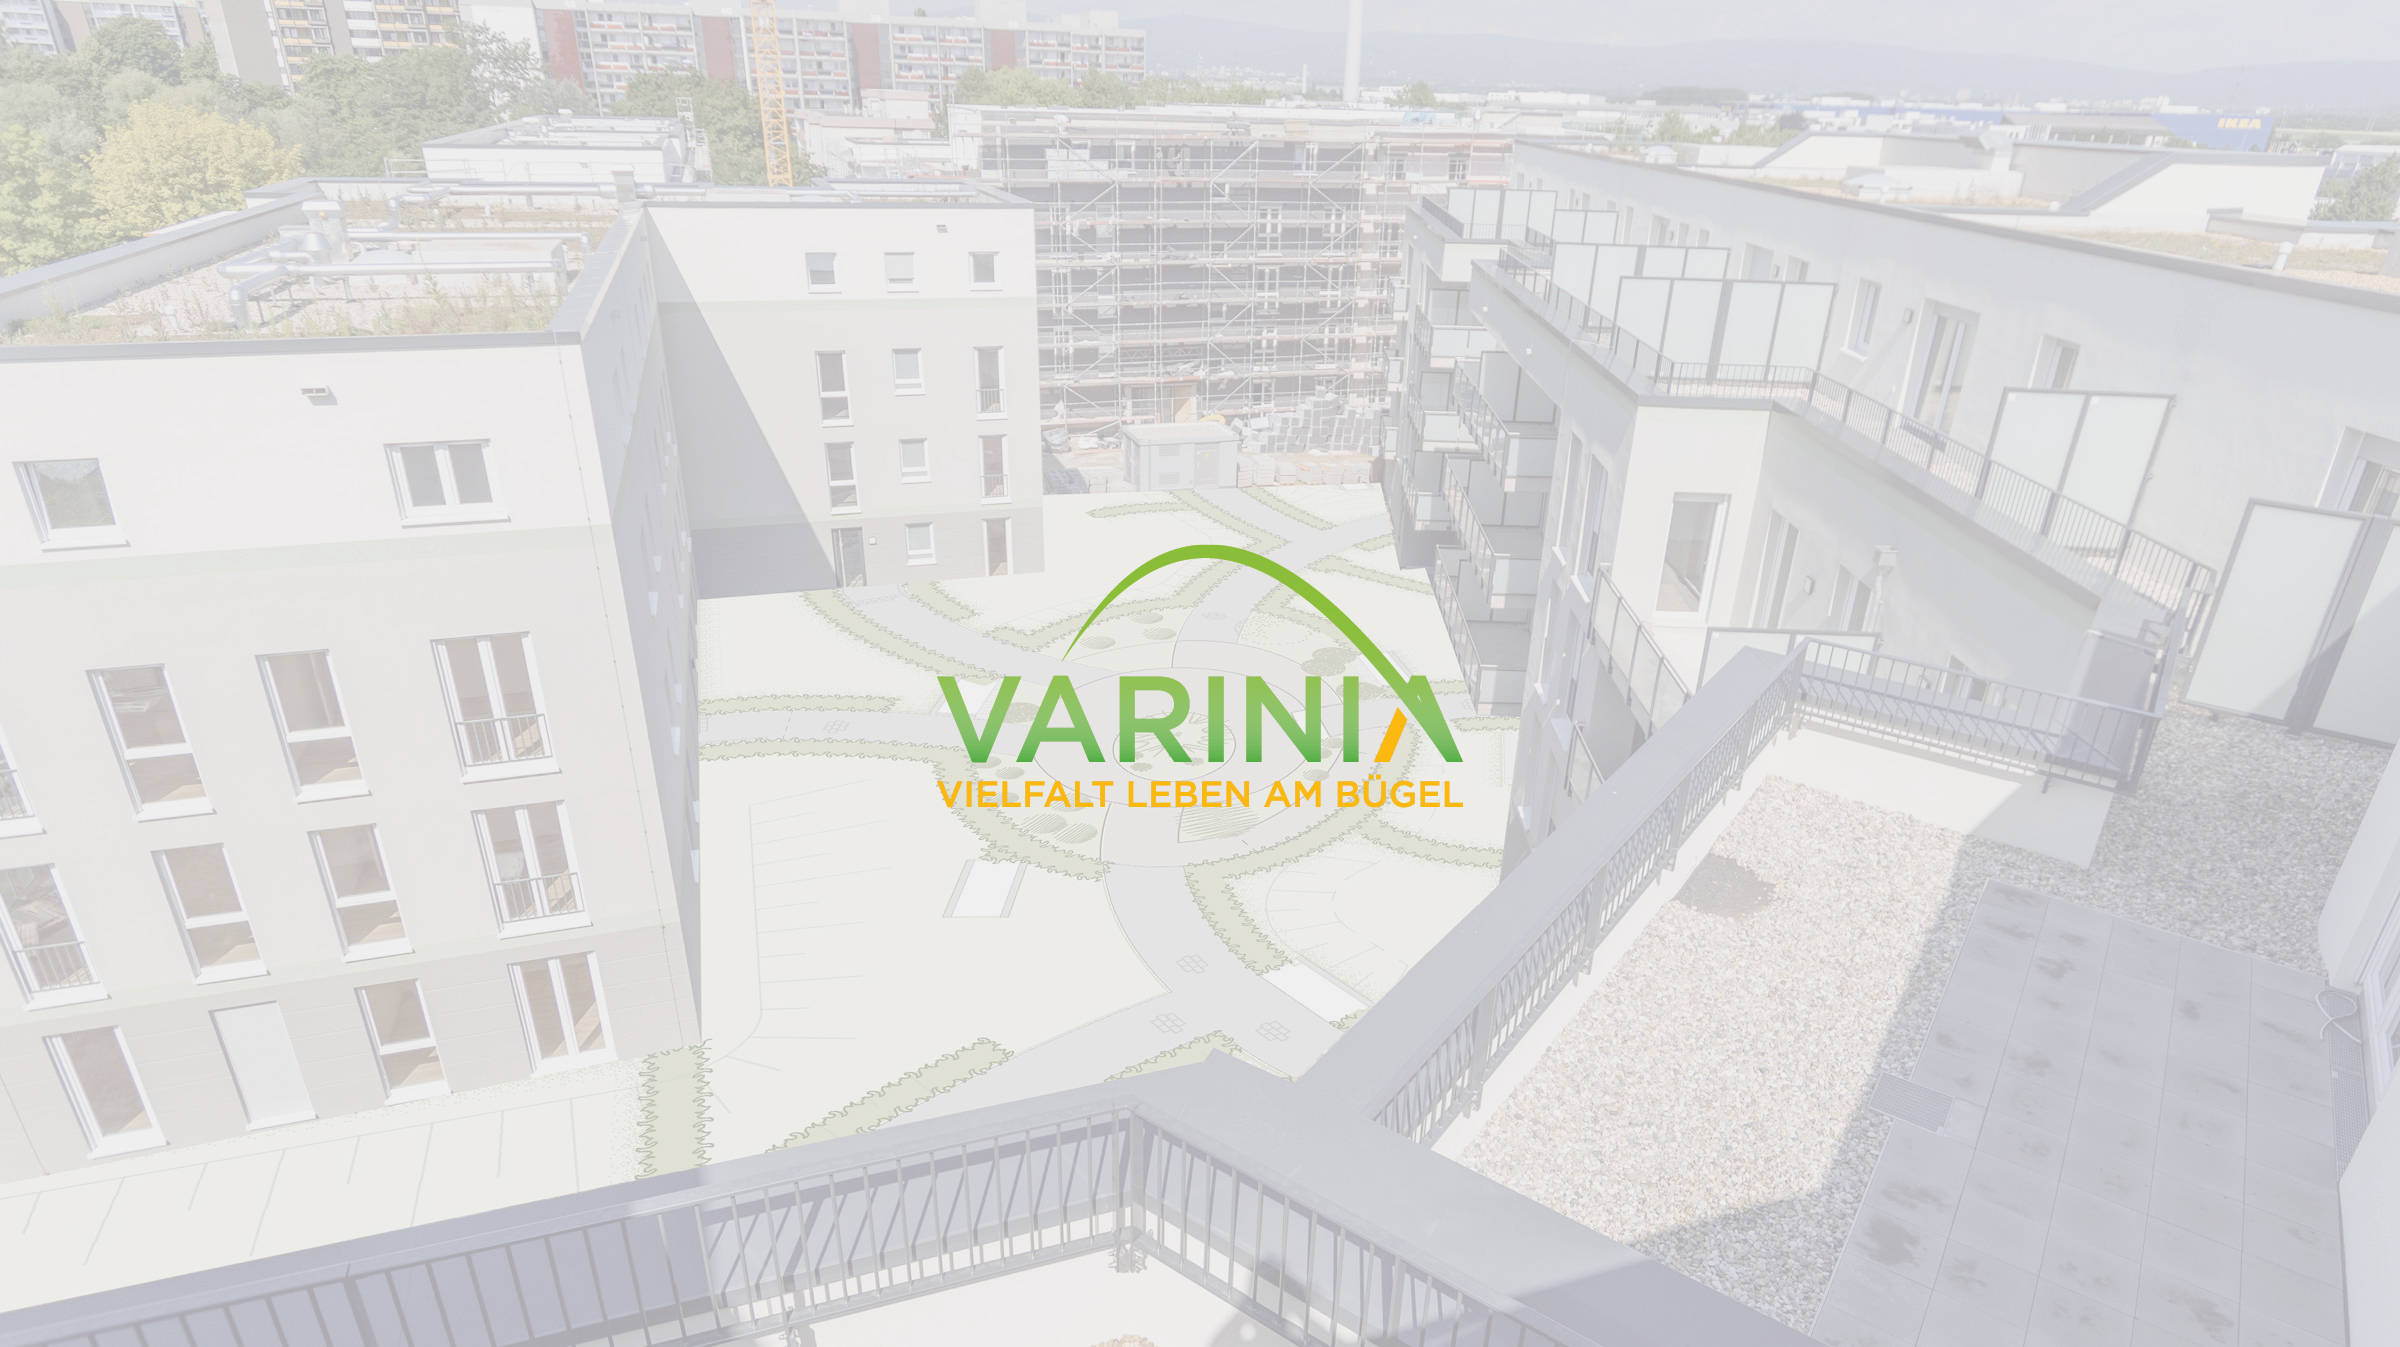 Frankfurt: Varinia, Header